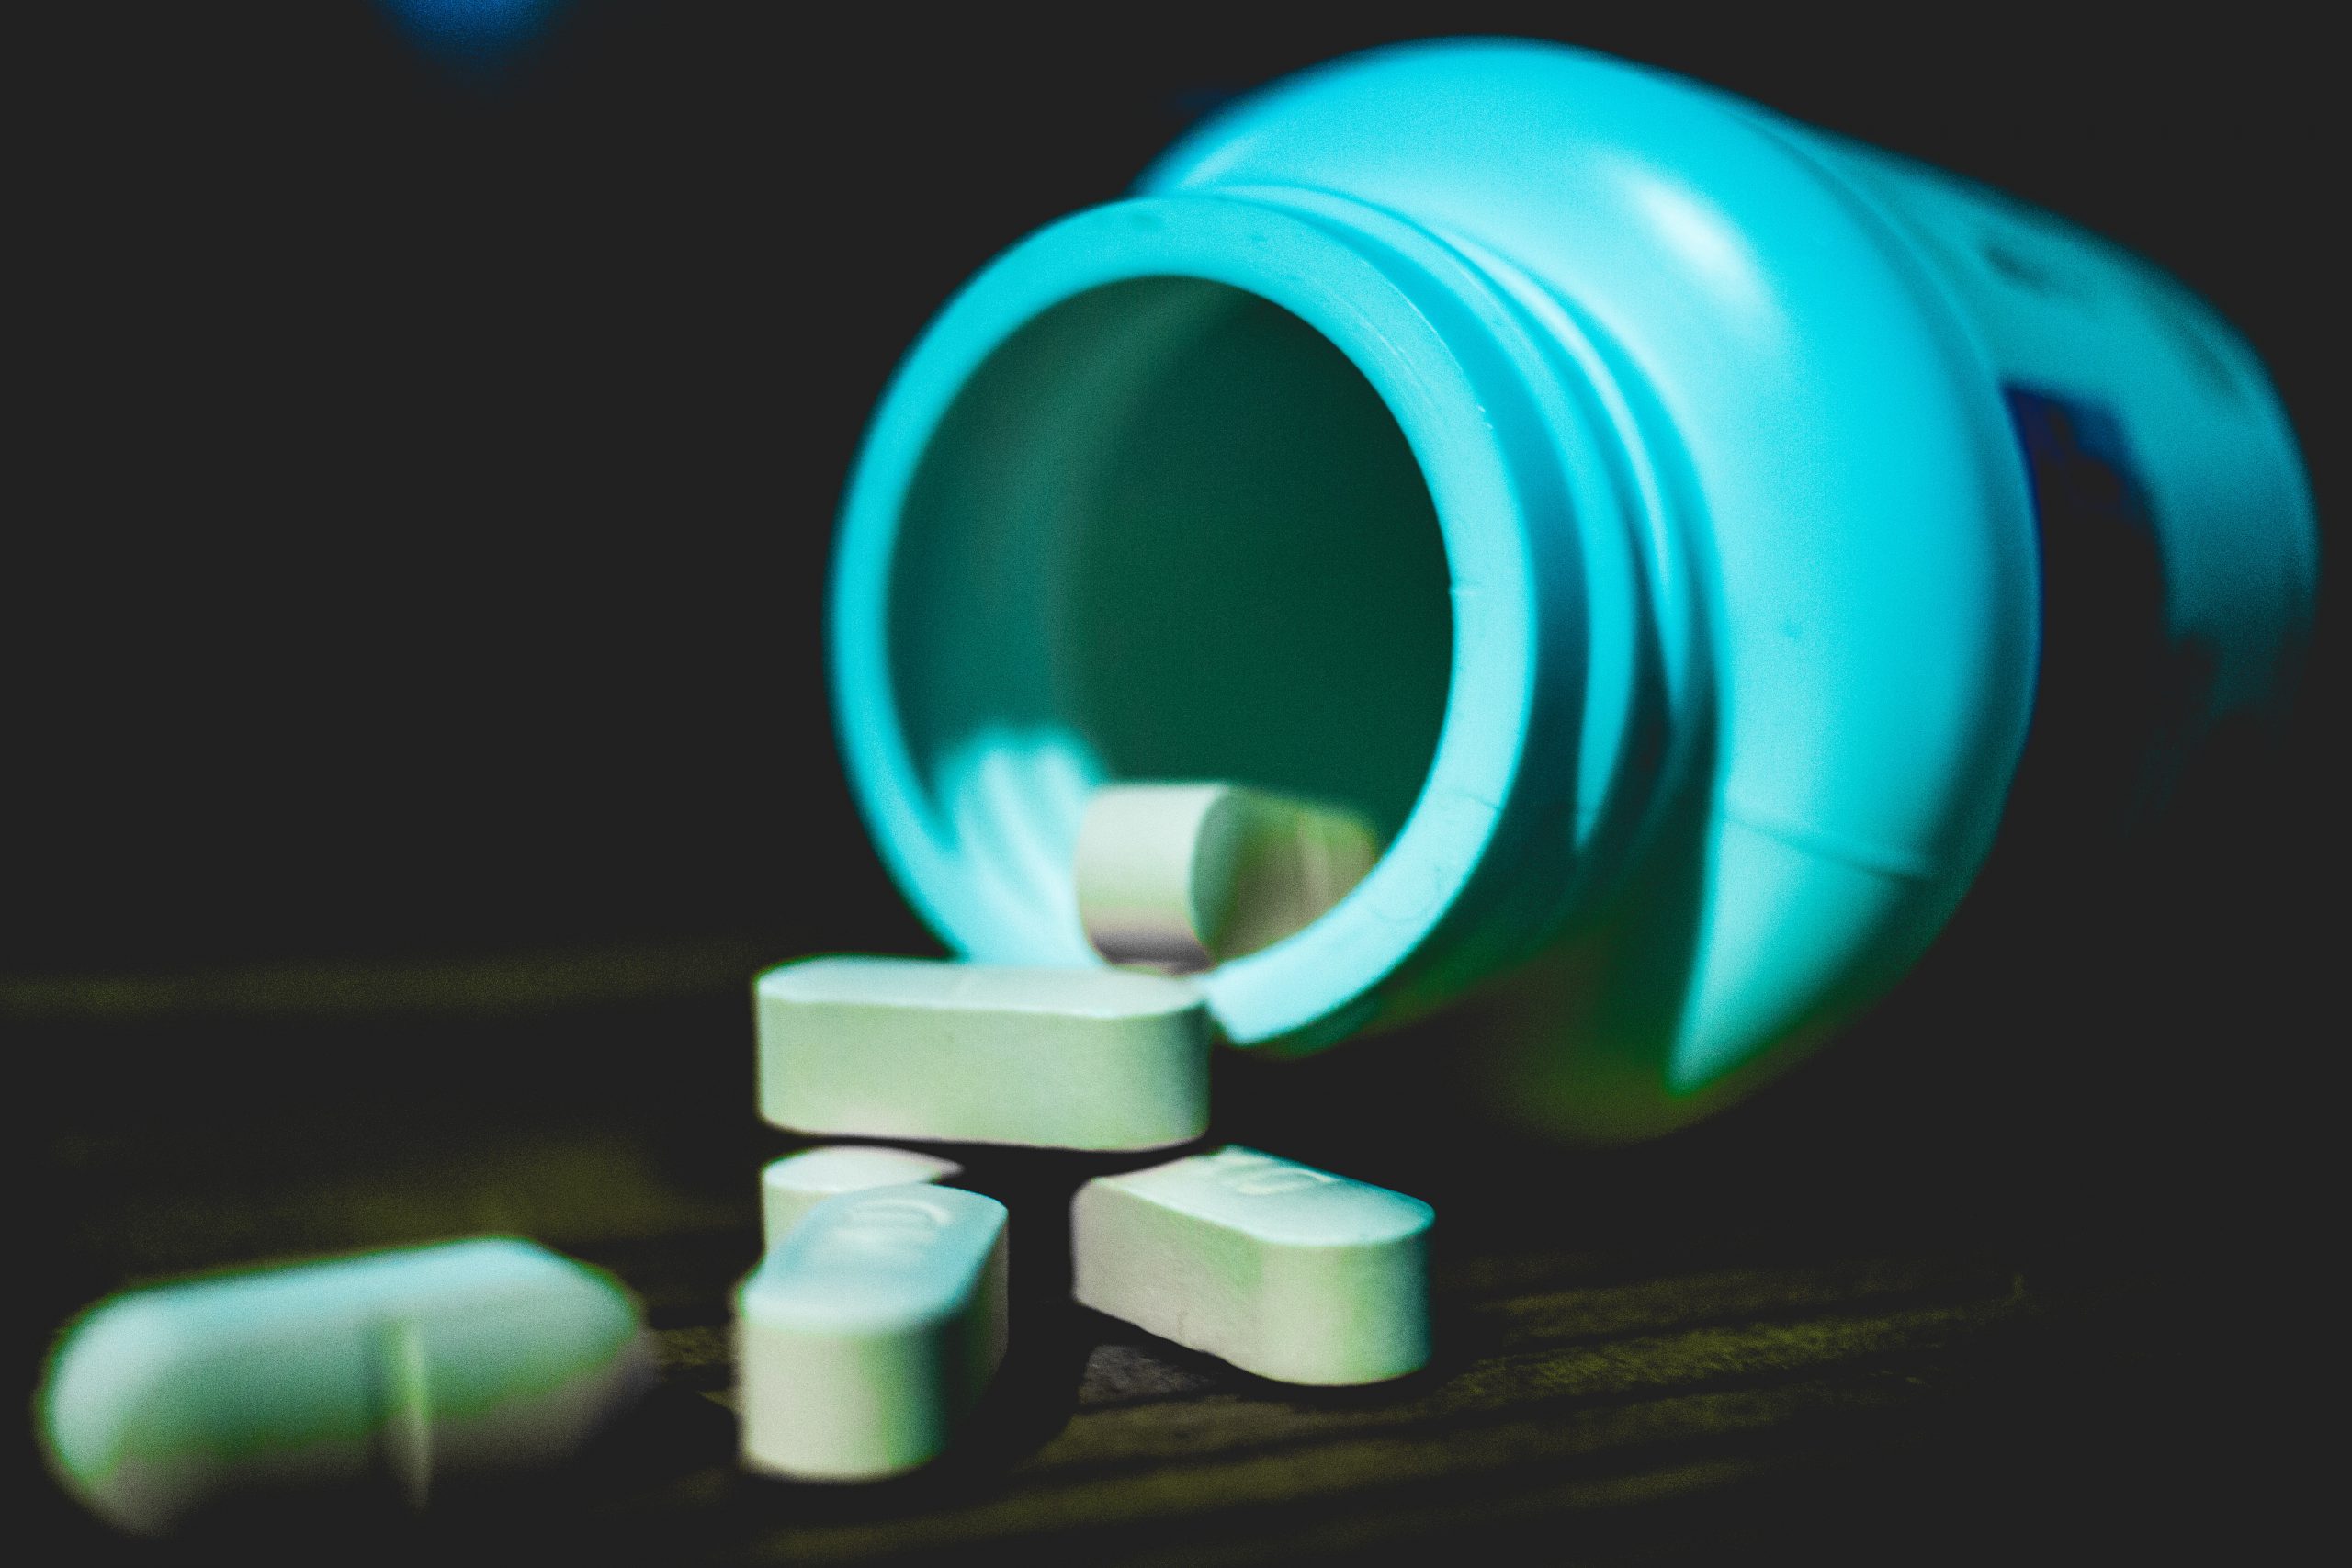 How to Stop Overprescribing Fluoroquinolone Antibiotics